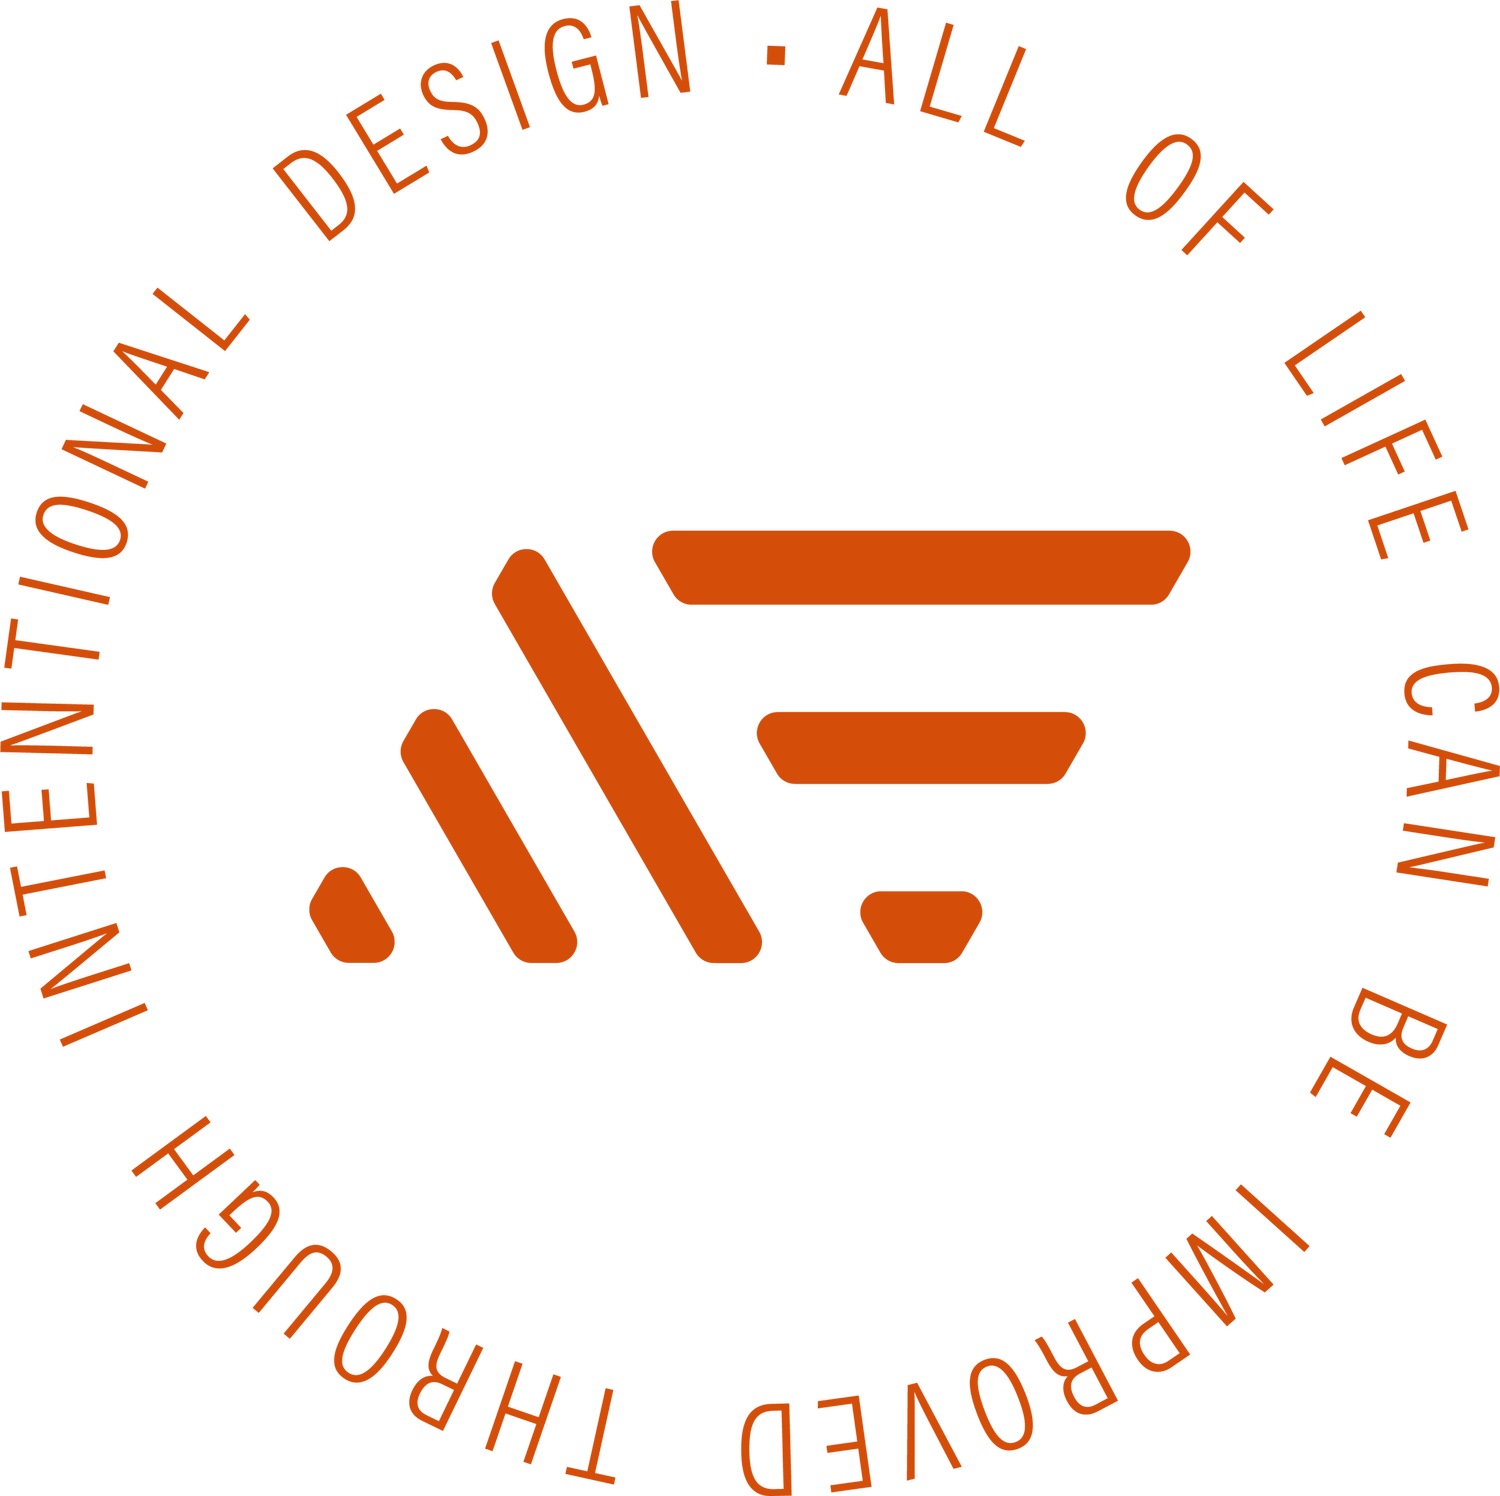 Michael E. Smith | Design Leader